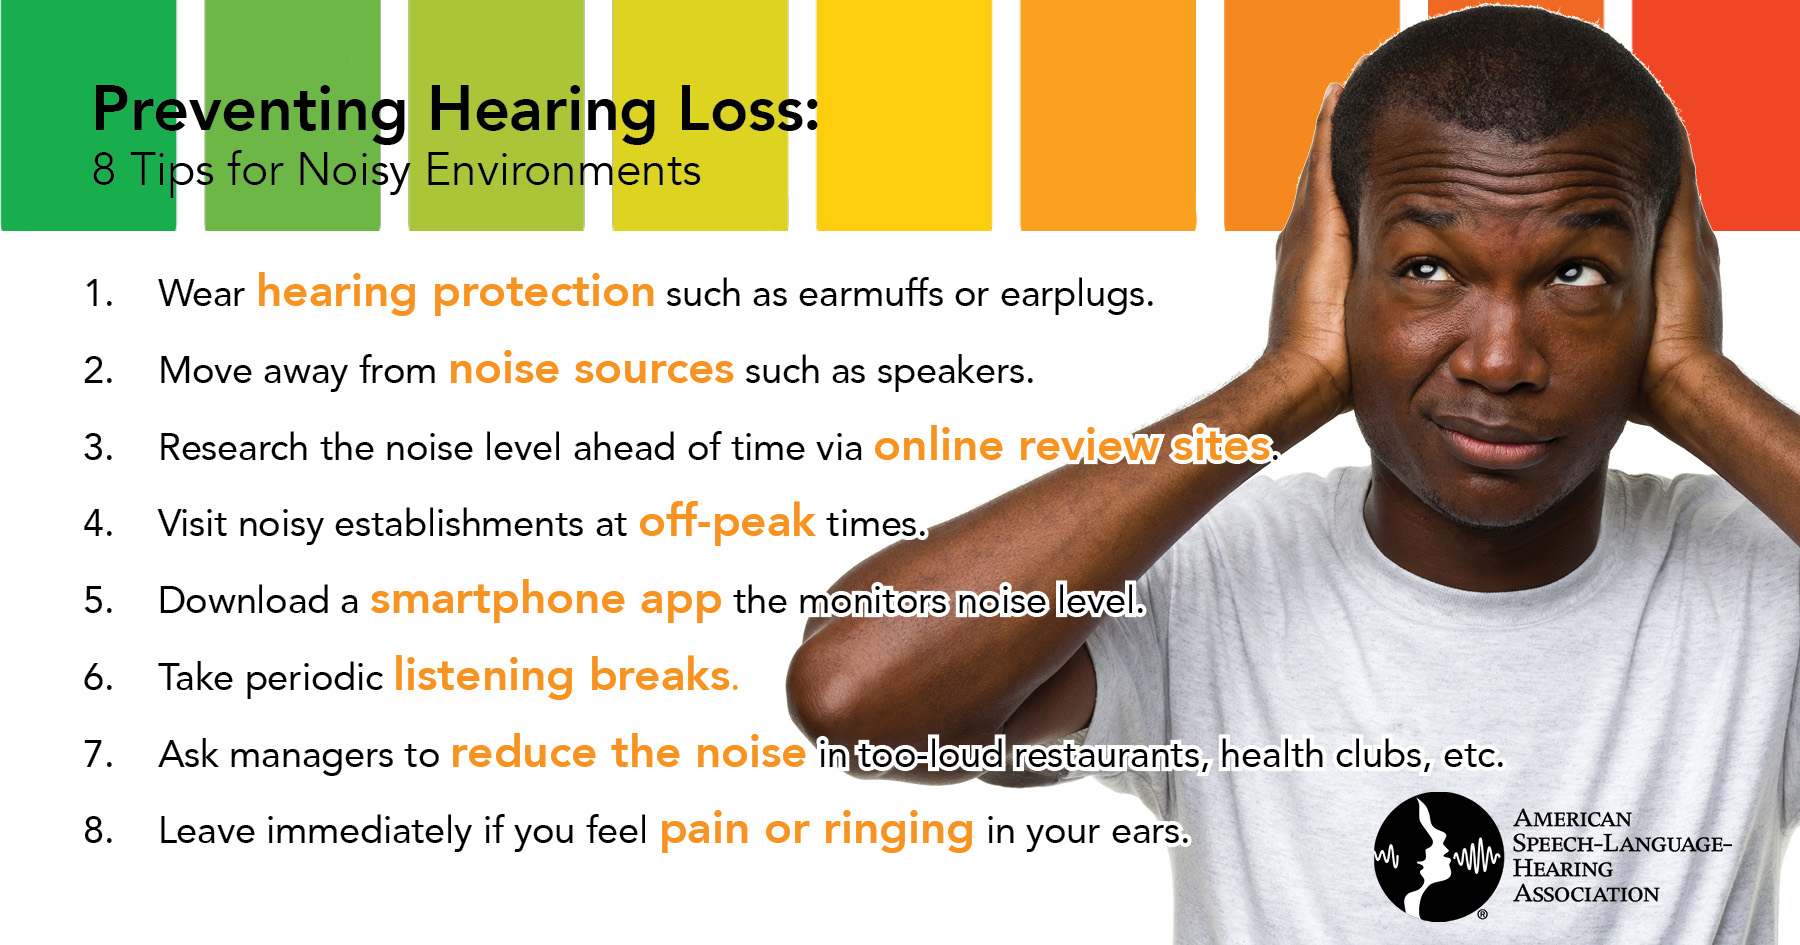 8 Tips for Noisy Environments